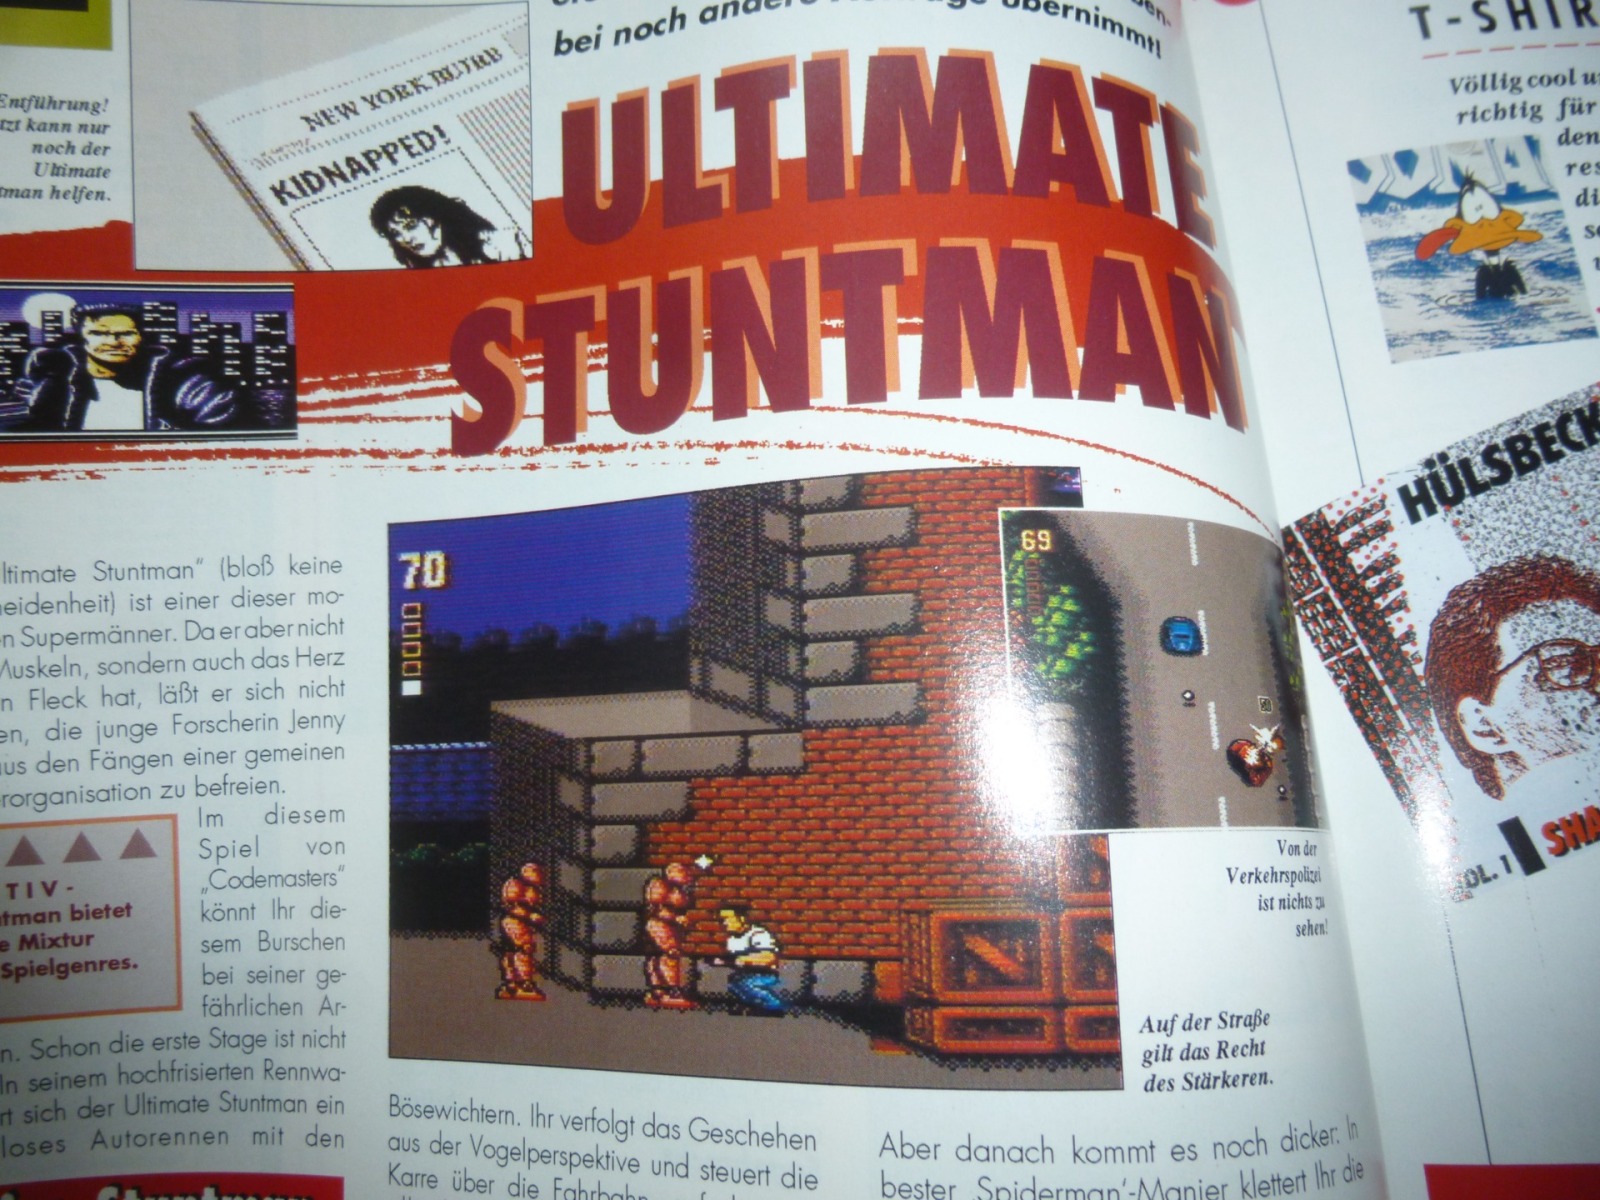 TOTAL Das unabhängige Magazin - 100 Nintendo - Ausgabe 9/93 1993 20